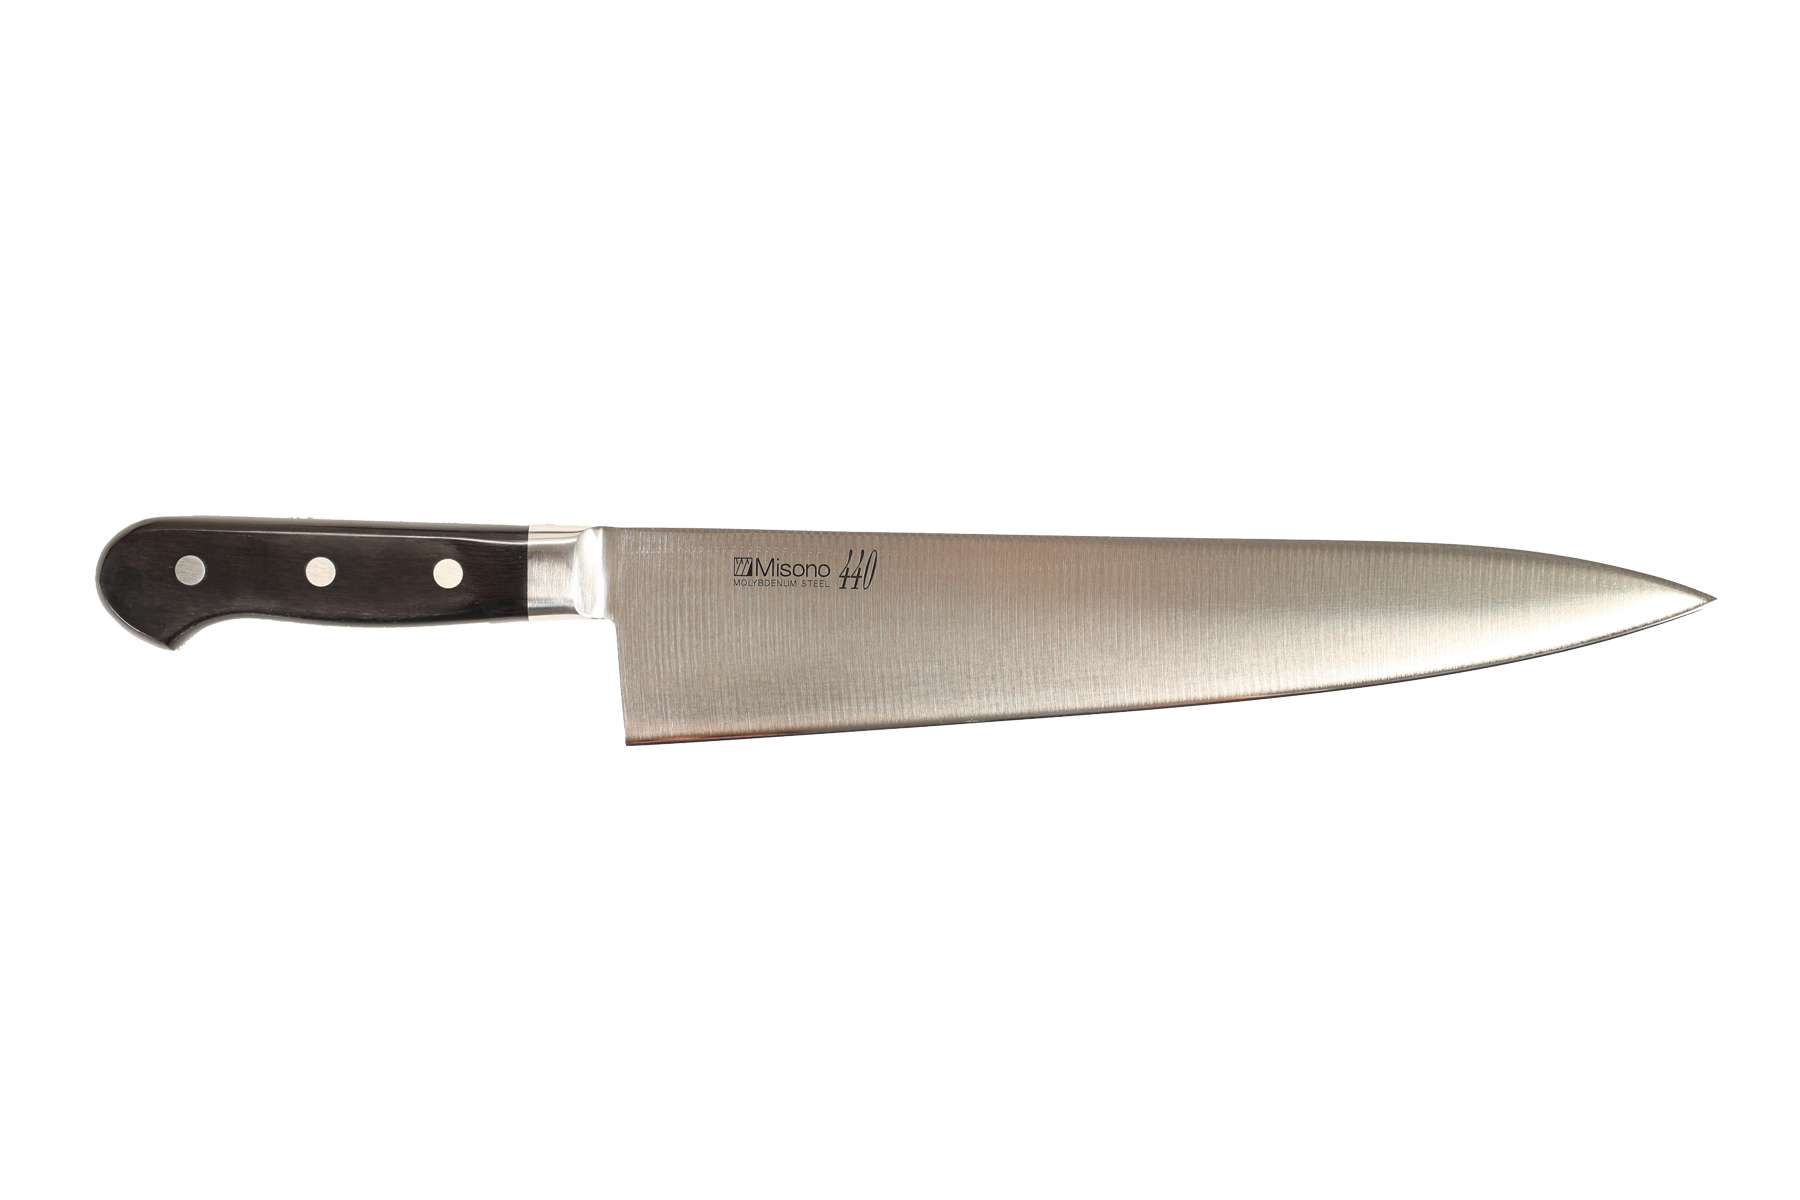 Couteau japonais Misono 440 - Couteau de chef 30 cm